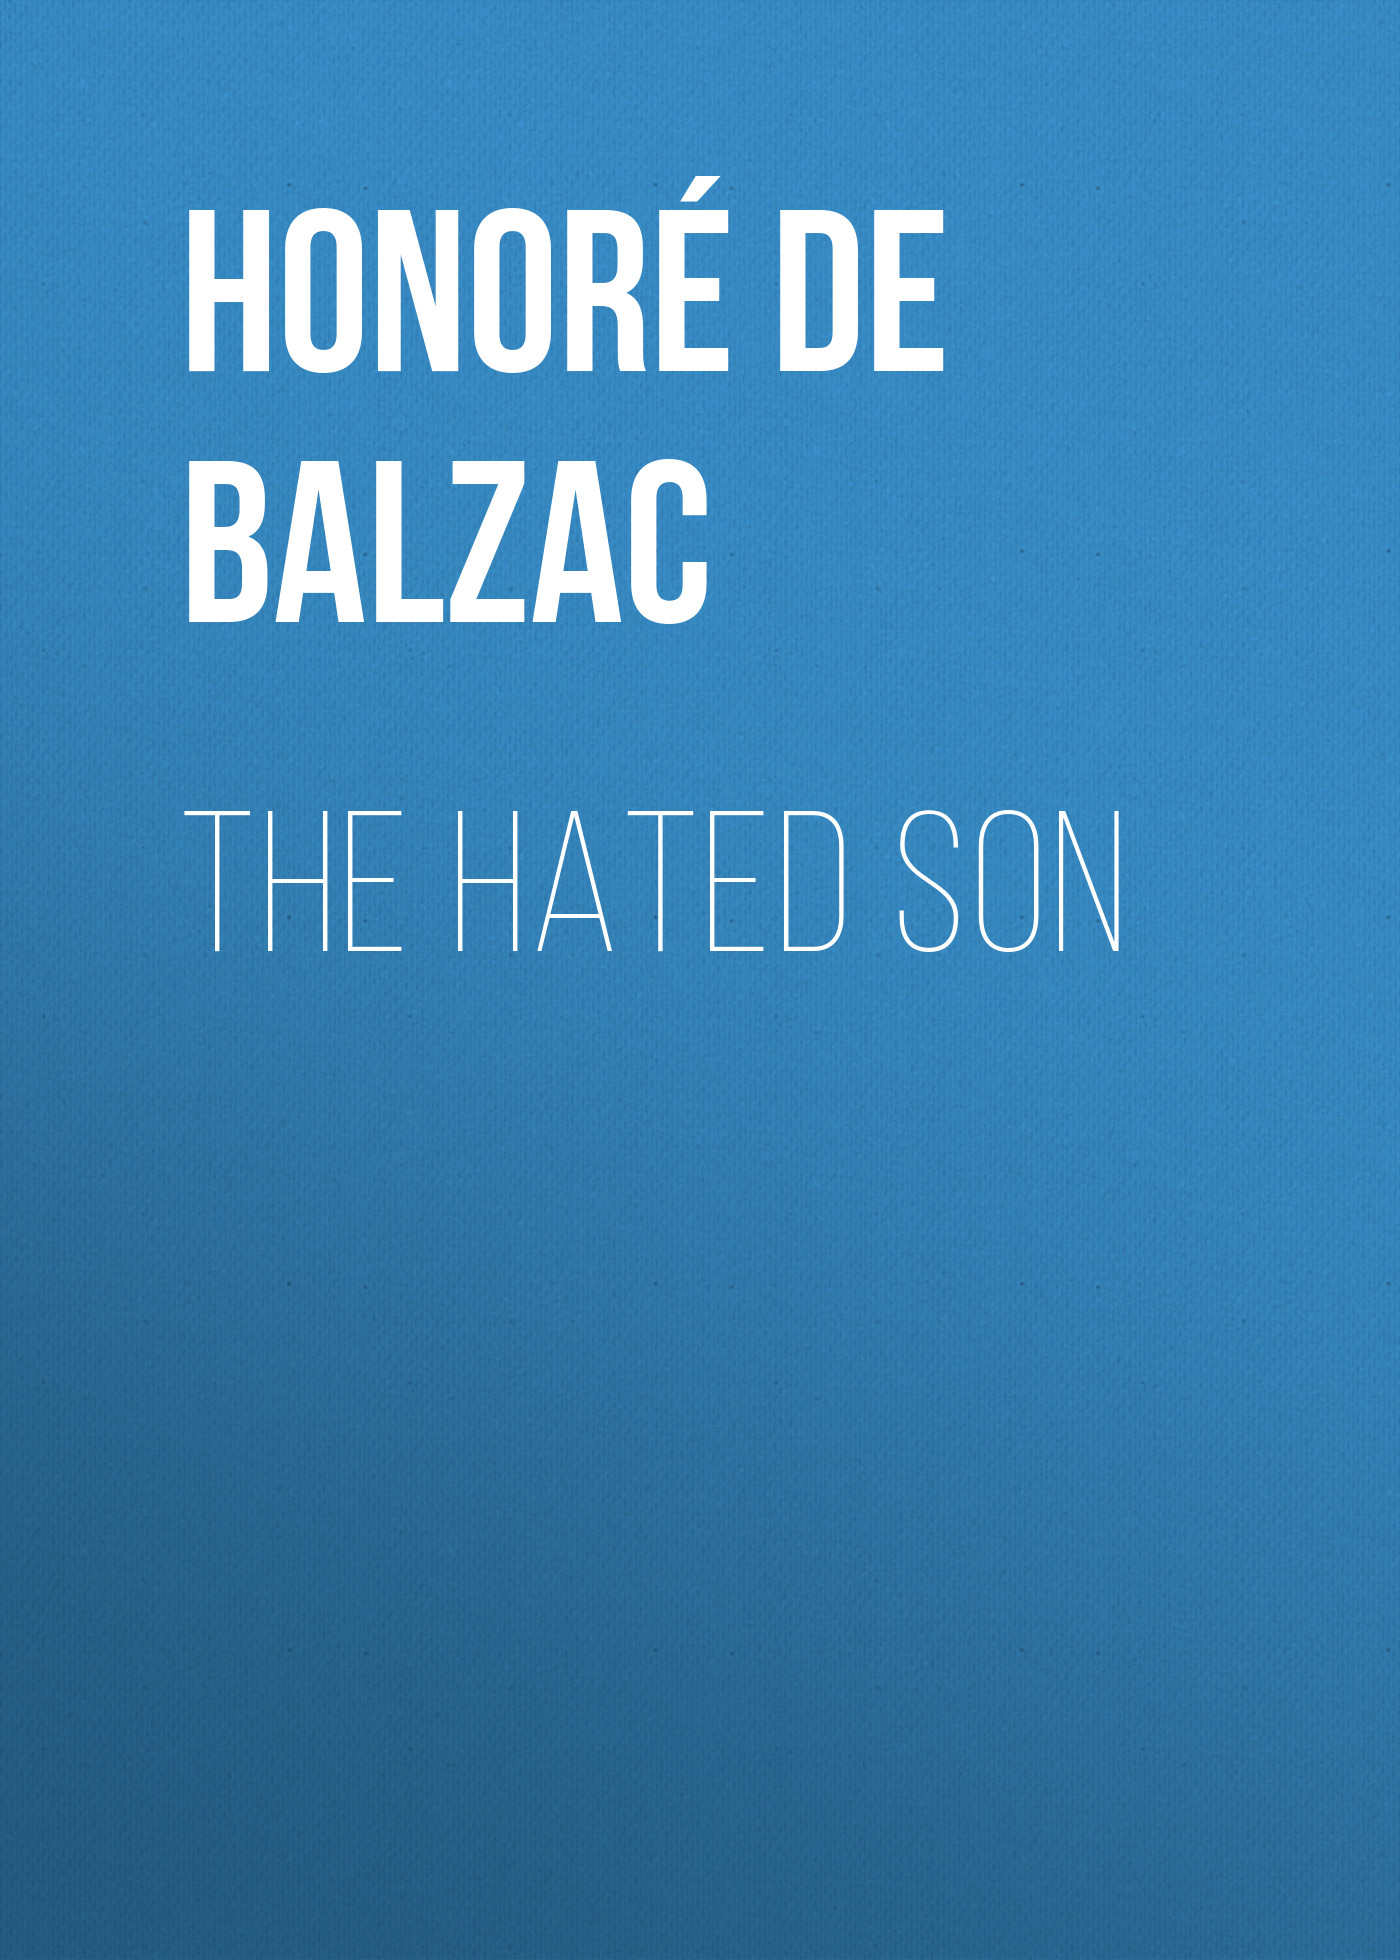 Книга The Hated Son из серии , созданная Honoré Balzac, может относится к жанру Литература 19 века, Зарубежная старинная литература, Зарубежная классика. Стоимость электронной книги The Hated Son с идентификатором 25020427 составляет 0 руб.